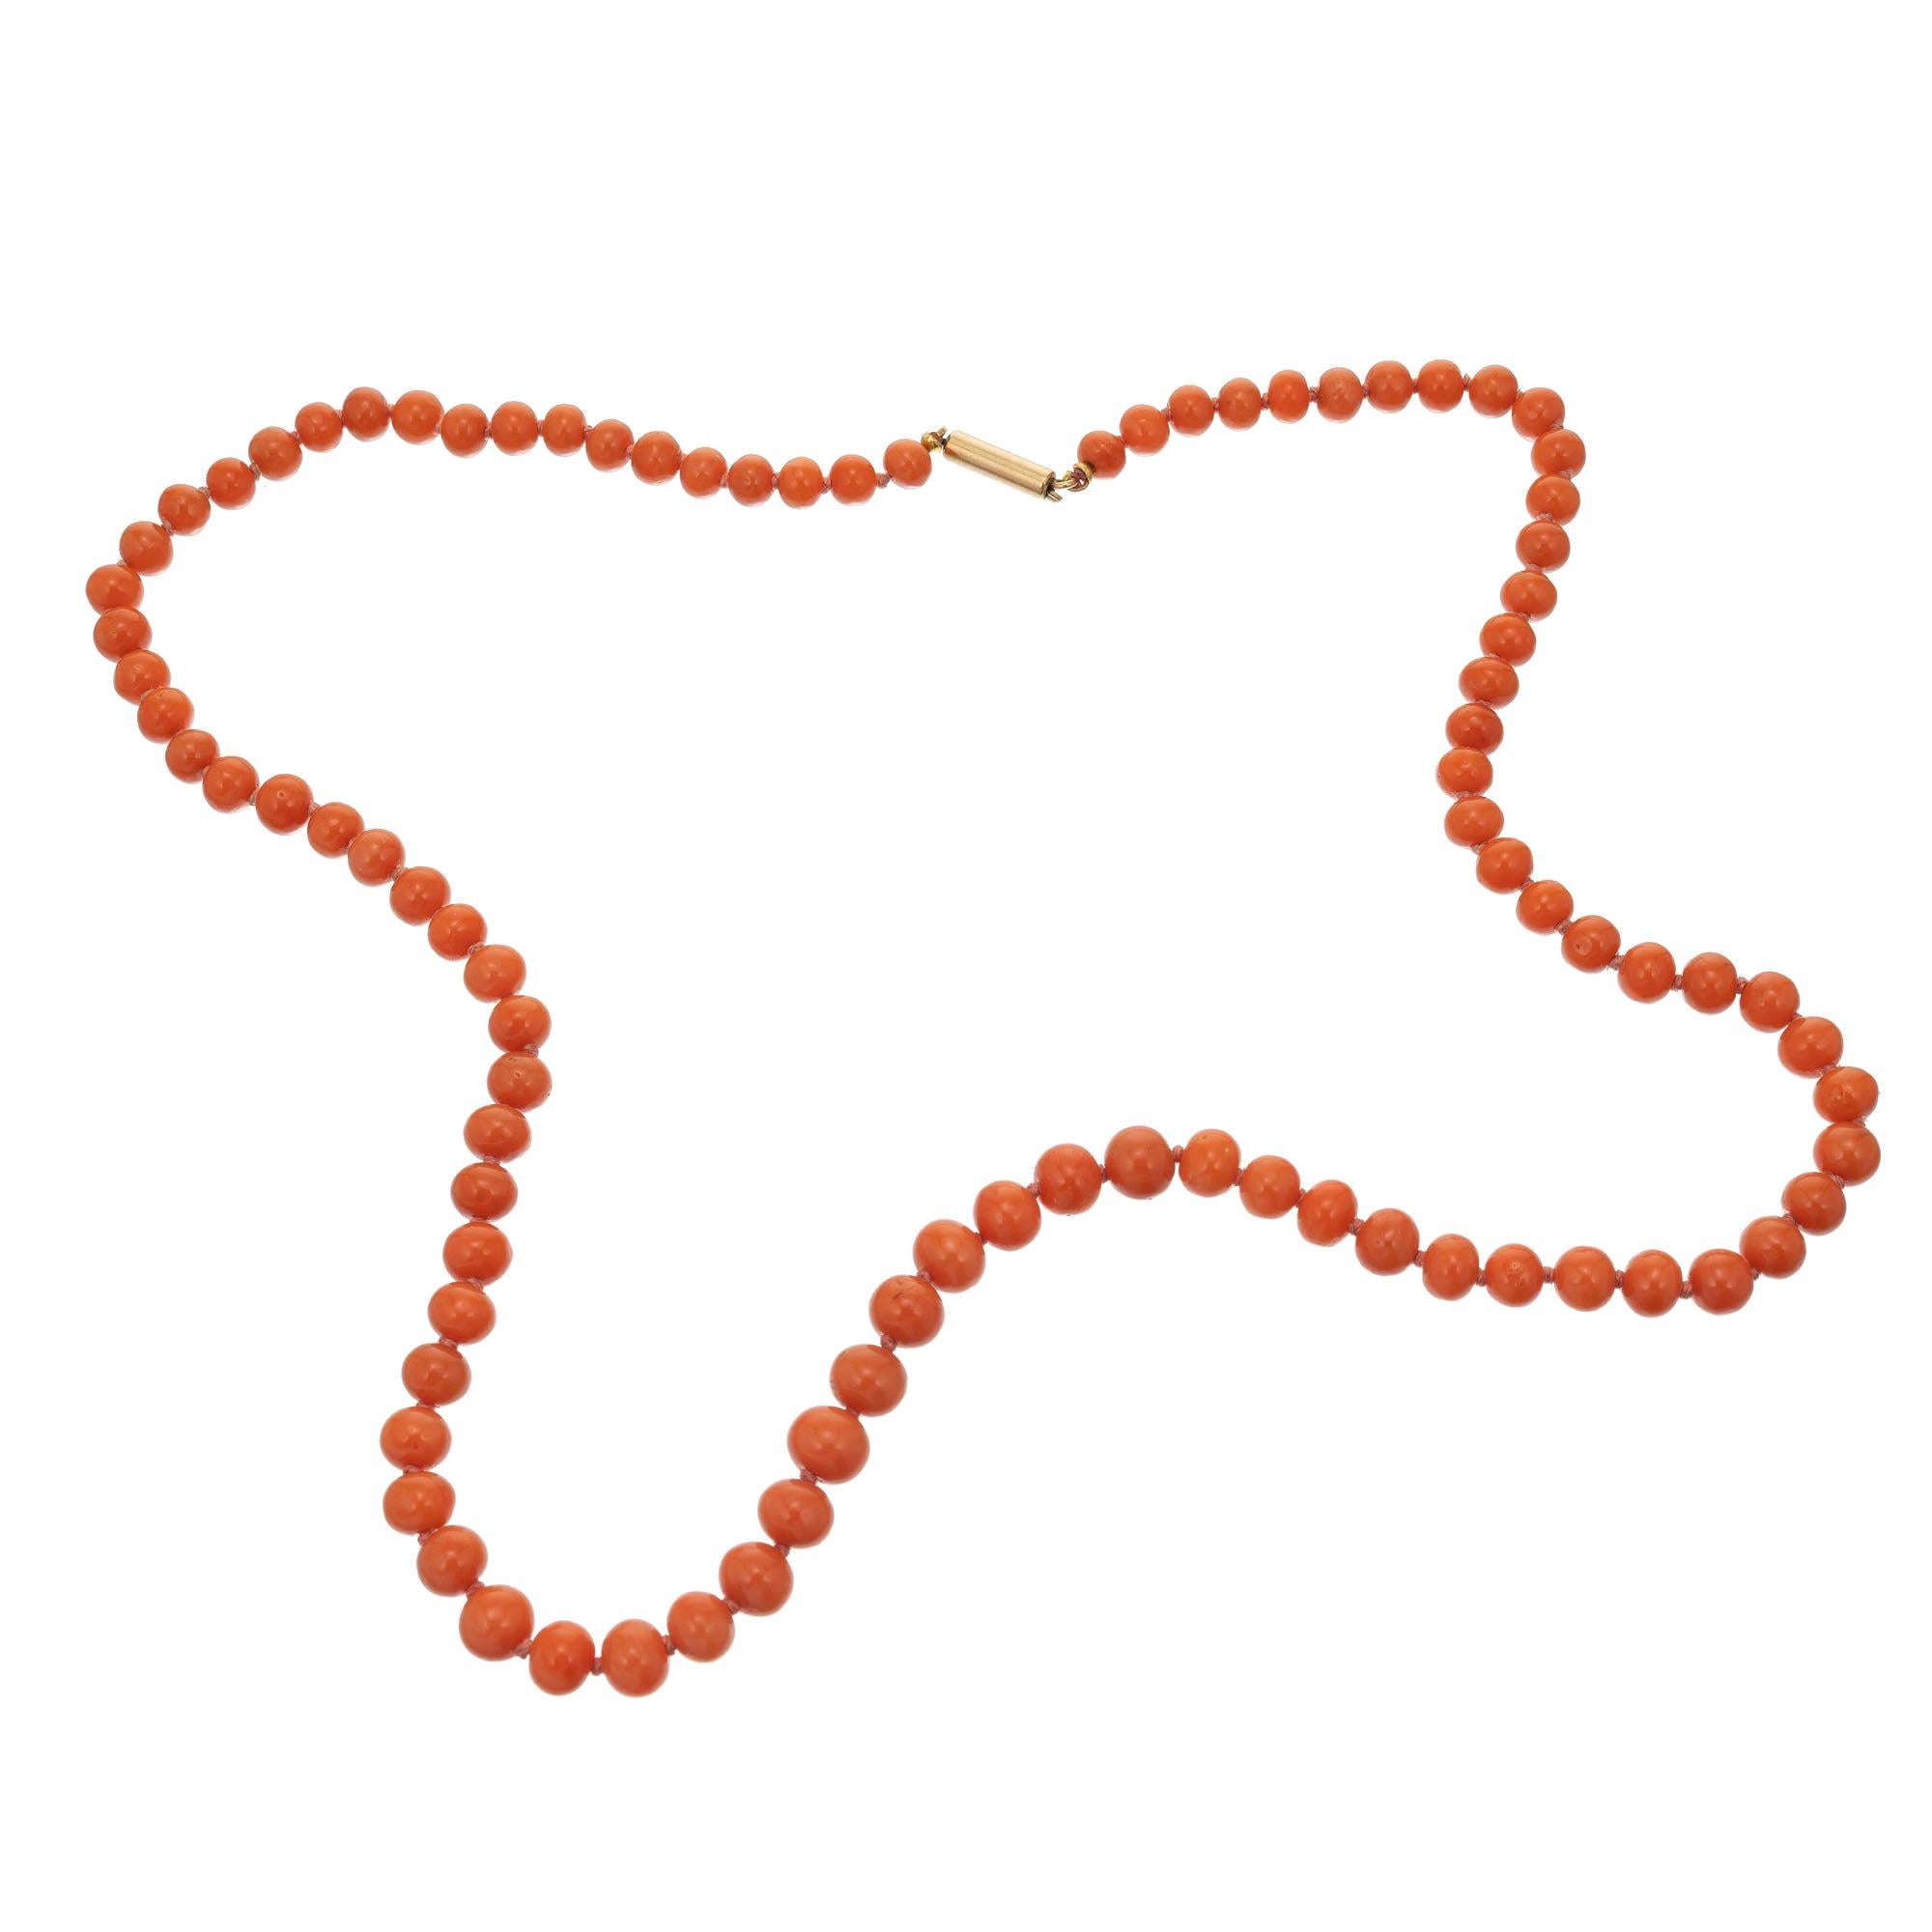 Halskette aus natürlicher Koralle, viktorianisch, rot-orange